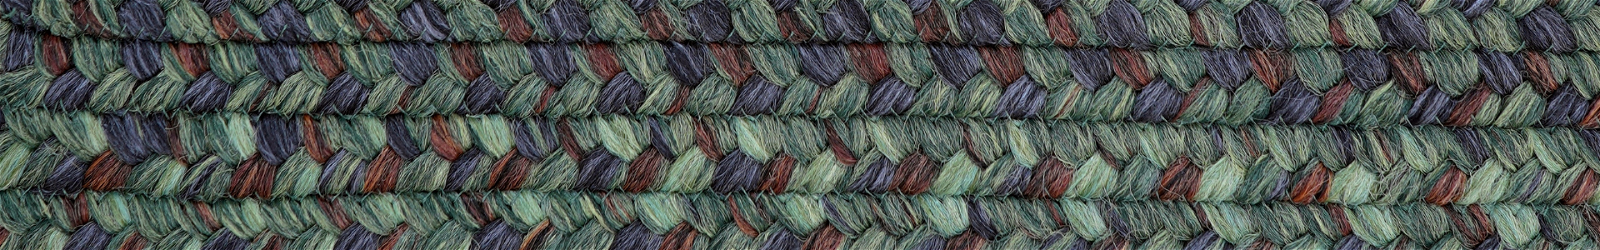 Polypropylene - Outdoor-Indoor - Green Braided Rugs